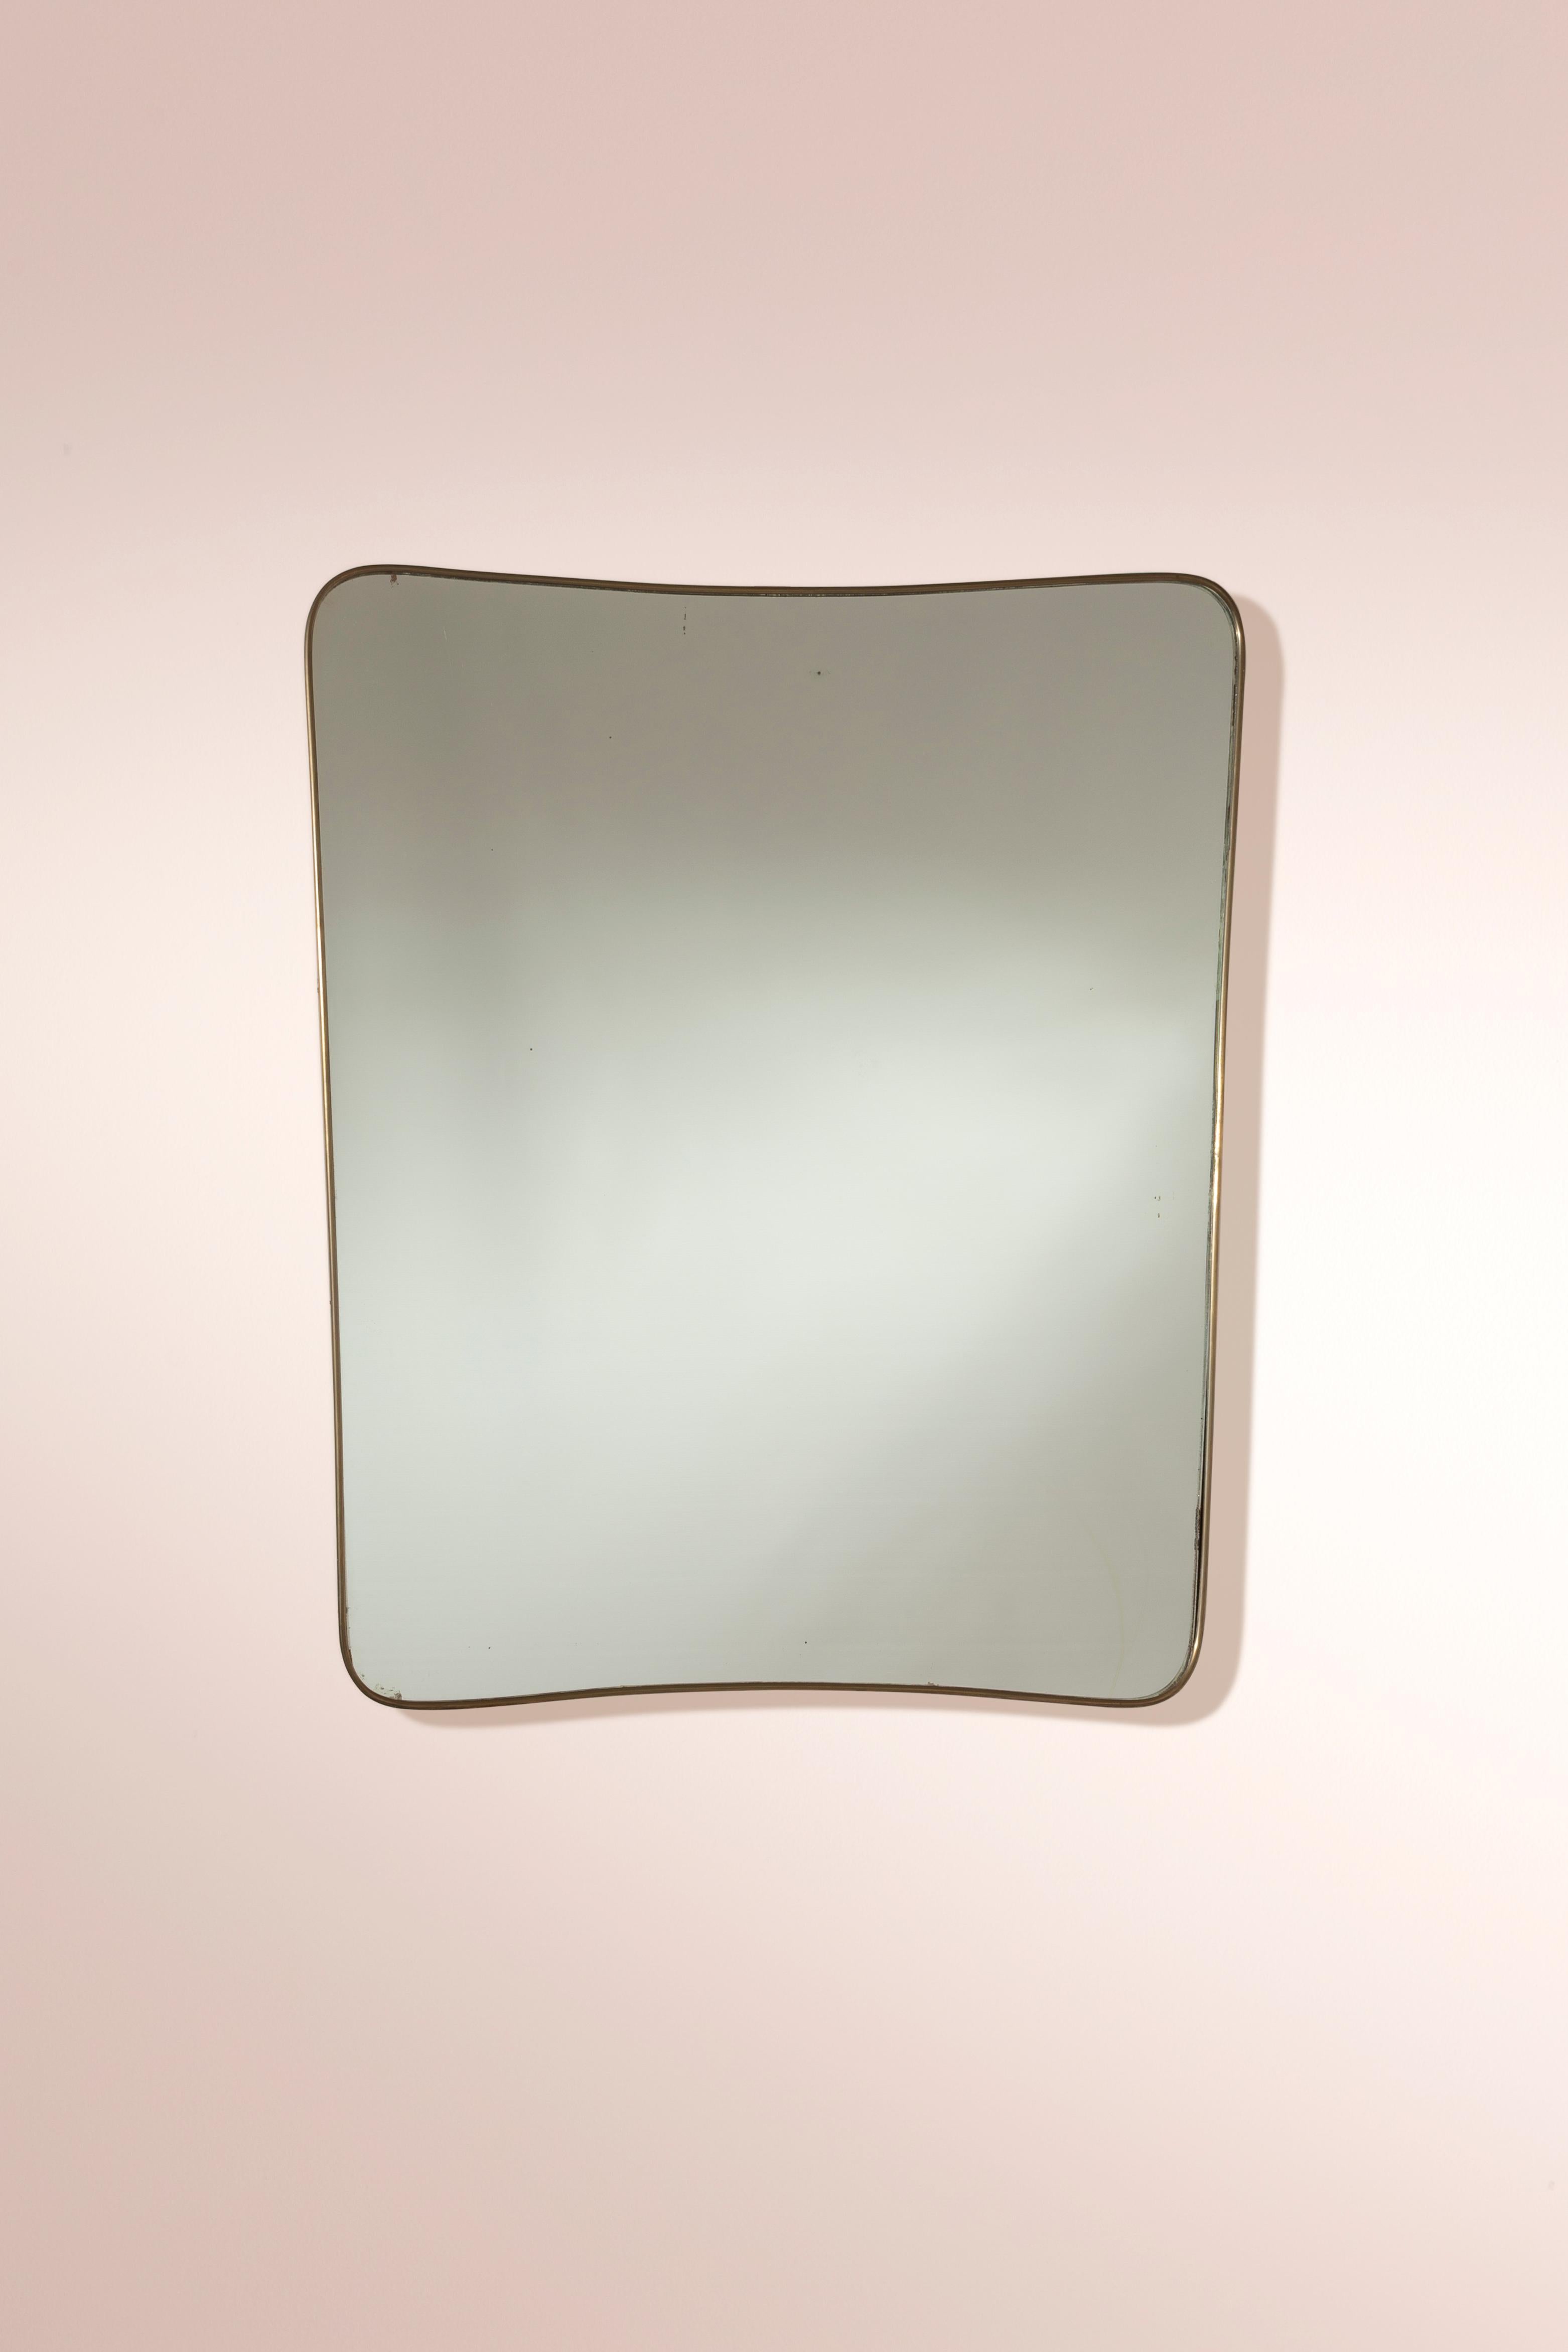 Ce miroir mural italien en laiton, datant des années 1950, incarne la fusion élégante de la forme et de la fonction grâce à son design à la fois simpliste et raffiné.

Fabriqué avec précision, ce miroir en laiton italien témoigne d'une préservation